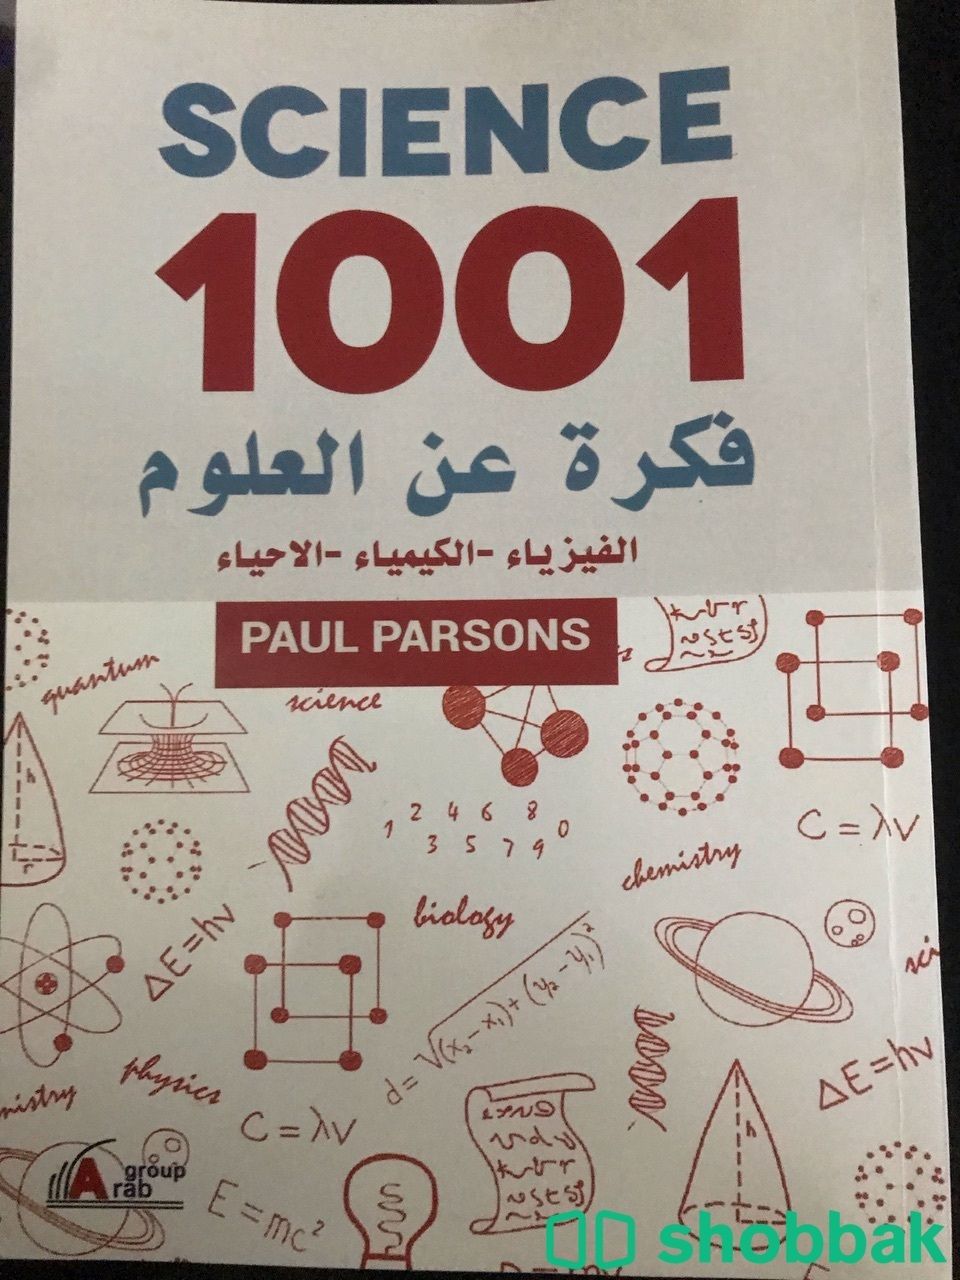 20 كتاب مستعمل للبيع الواحد ب 10 ريال Shobbak Saudi Arabia